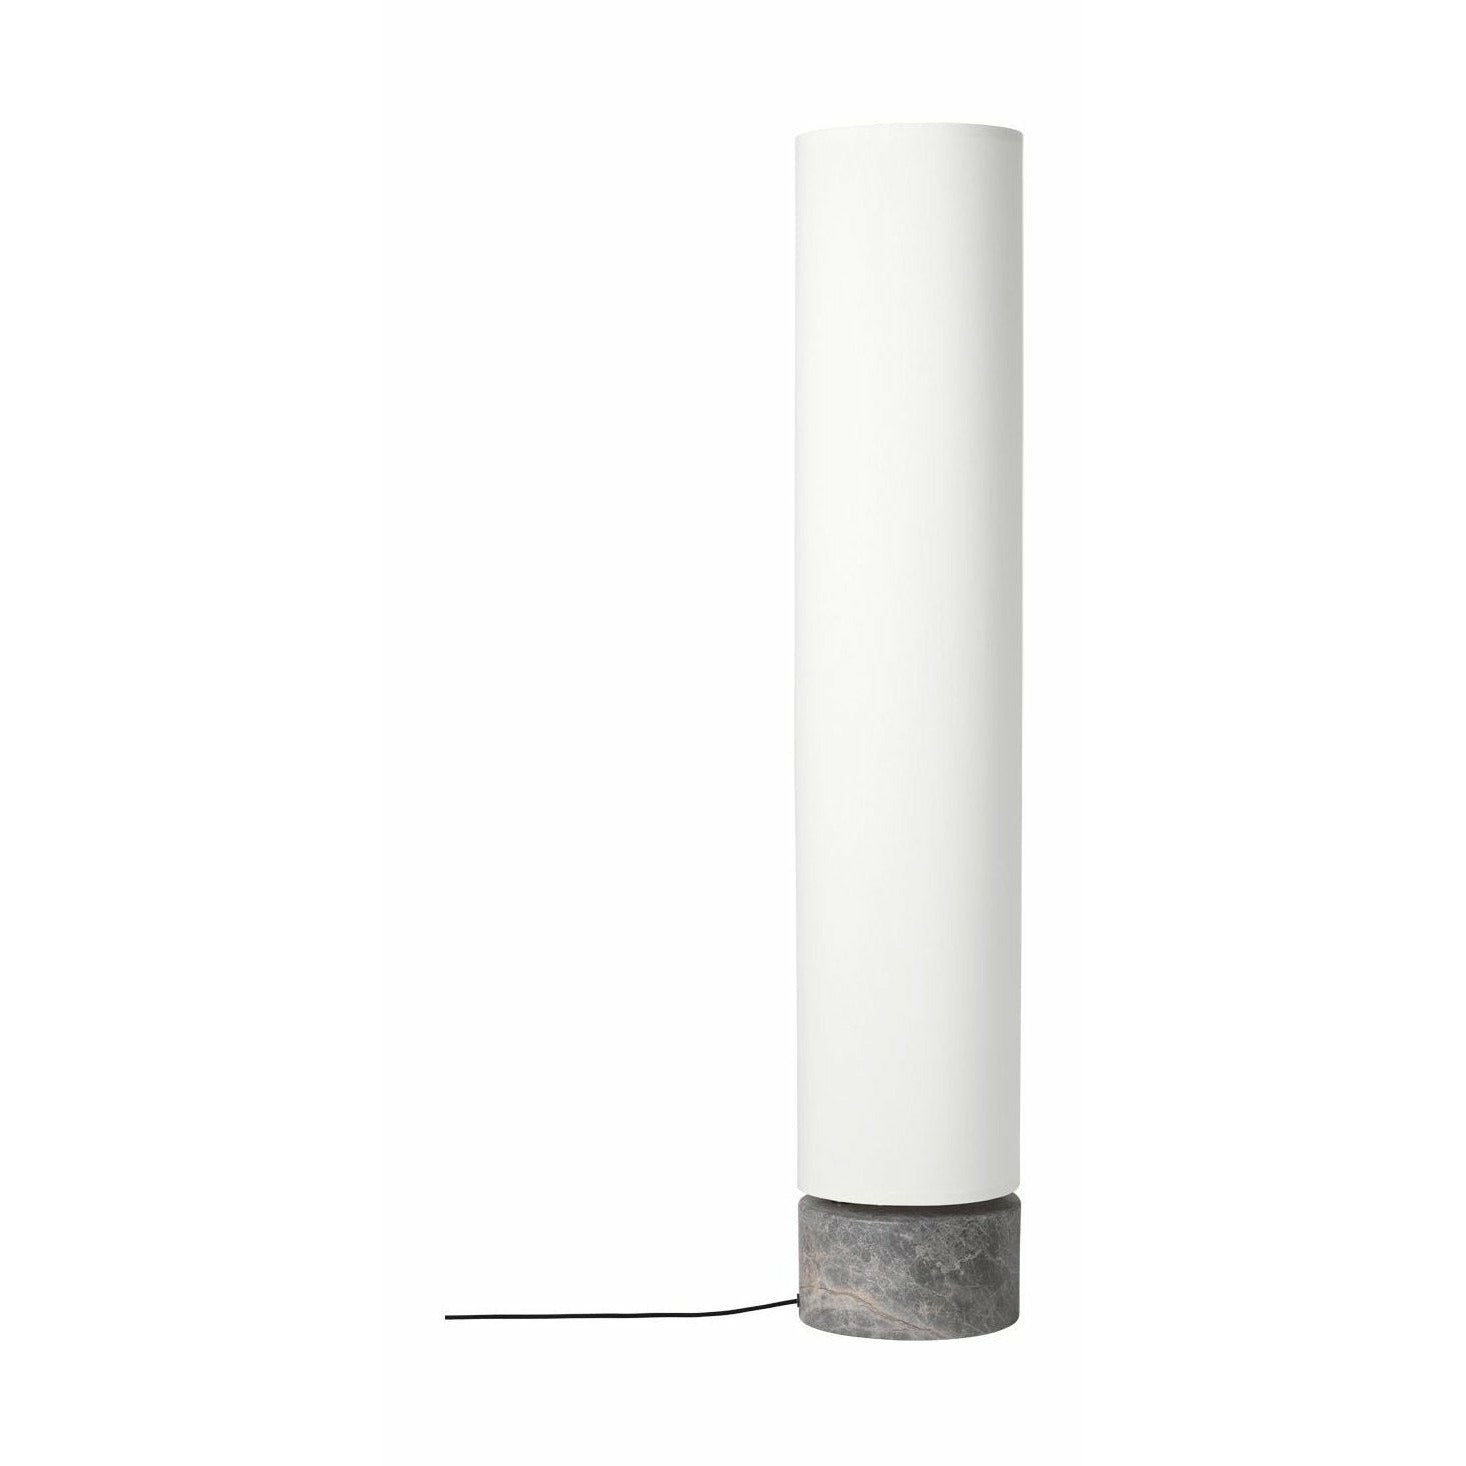 Gubi Unbound Lamp h 120厘米，白色